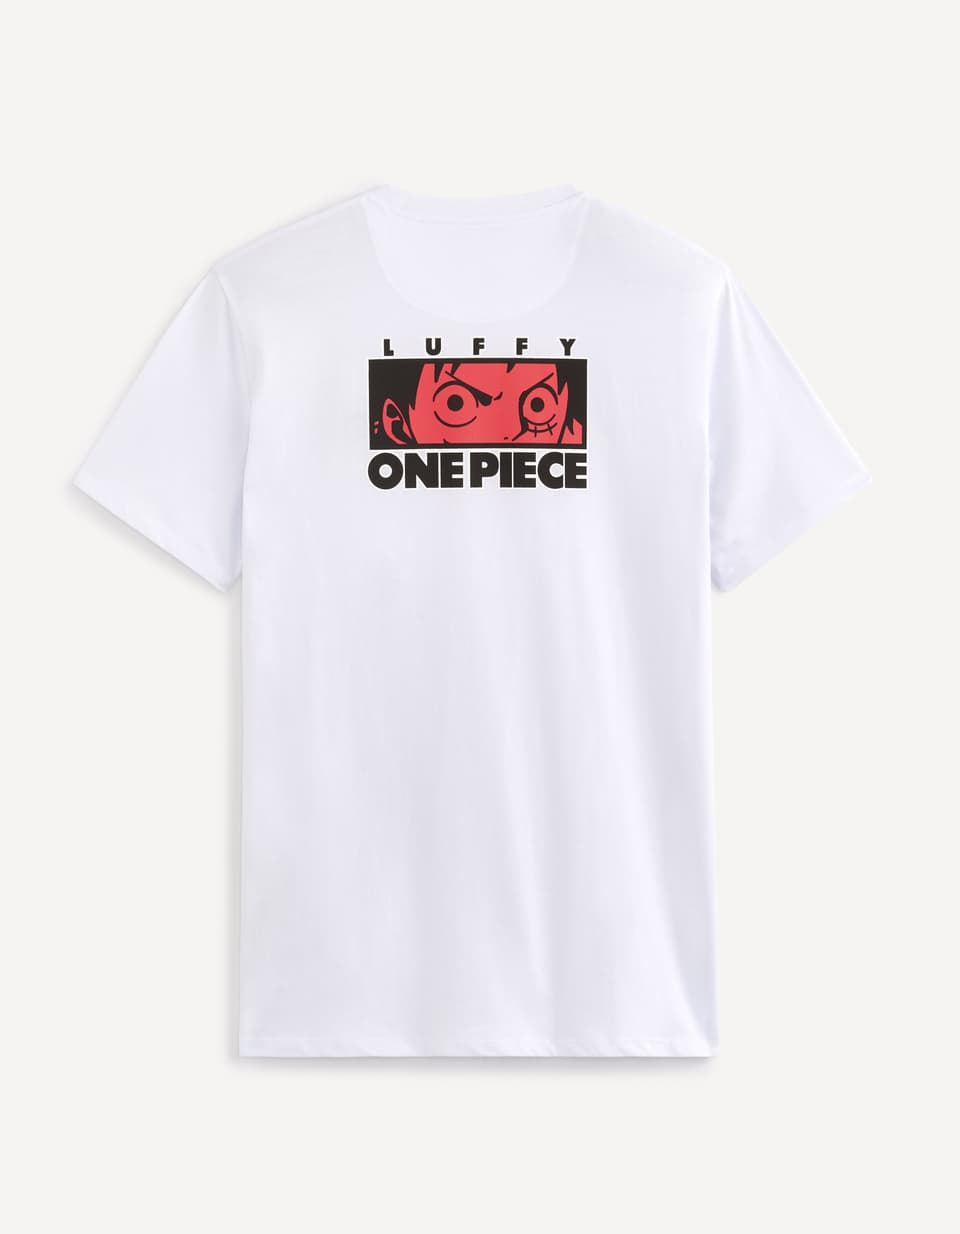 Crunchyroll - Celio lance une collection de vêtements One Piece